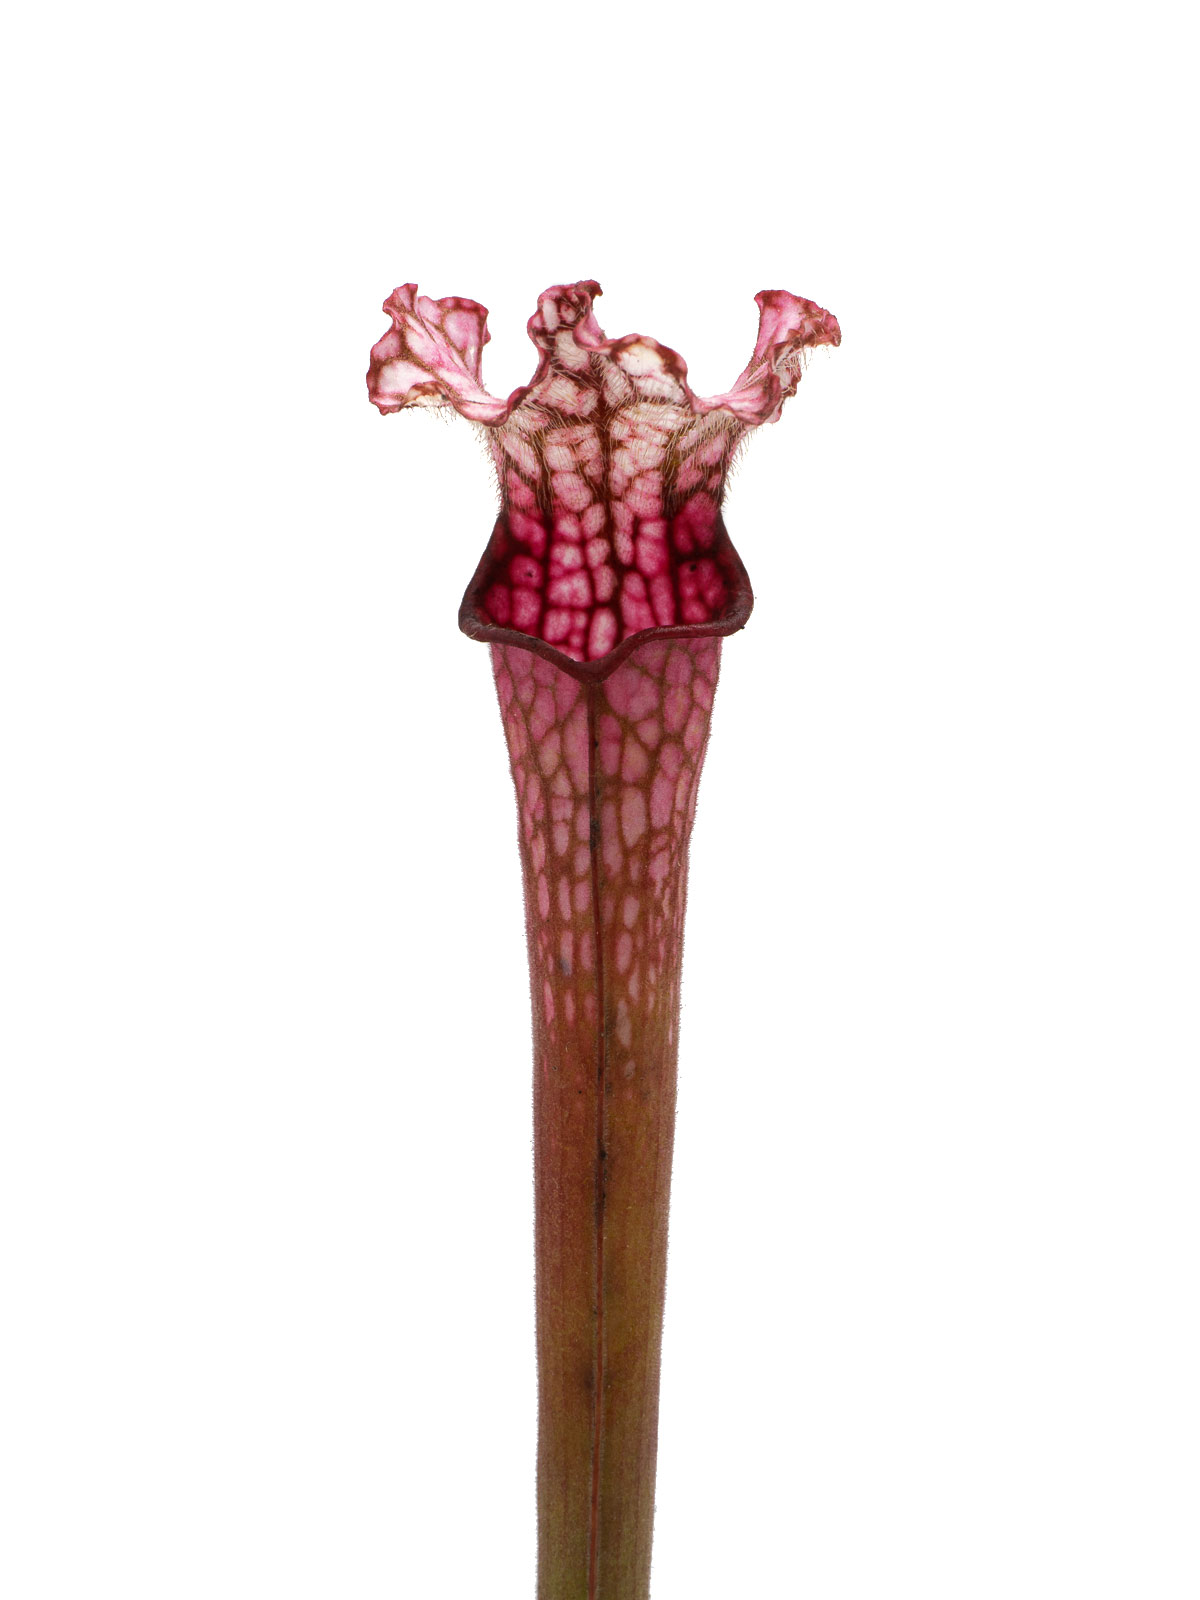 Sarracenia leucophylla - MK L49B, Perdido, Baldwin County, Alabama